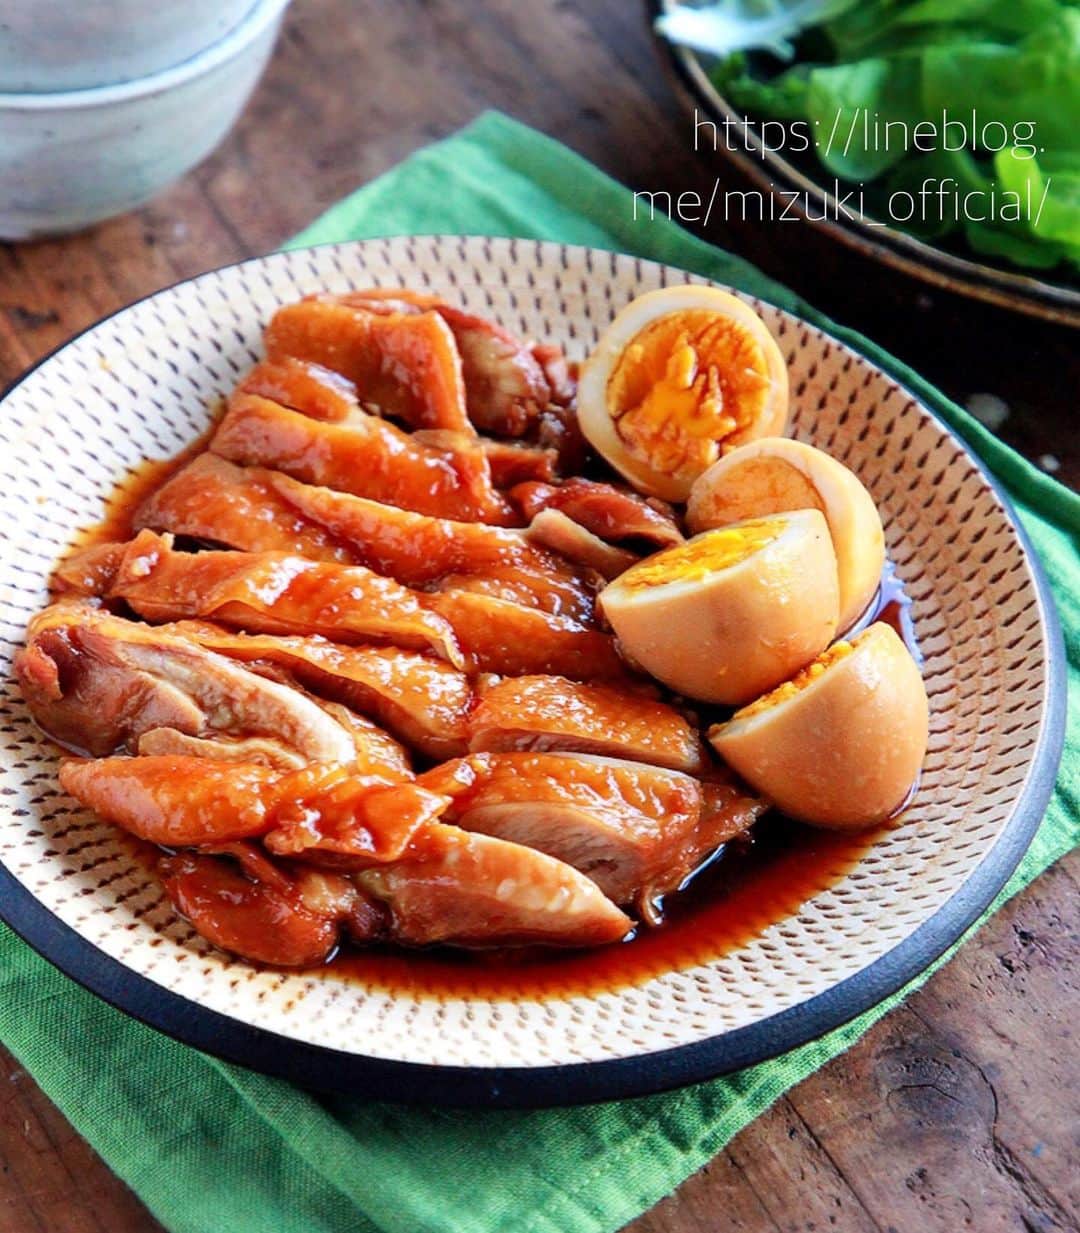 Mizuki【料理ブロガー・簡単レシピ】さんのインスタグラム写真 - (Mizuki【料理ブロガー・簡単レシピ】Instagram)「・﻿ 【レシピ】ーーーーーーー﻿ ♡煮るだけ簡単♡﻿ 鶏肉とたまごの照り煮﻿ ーーーーーーーーーーーー﻿ ﻿ ﻿ おはようございます(*^^*)﻿ ﻿ 今日ご紹介させていただくのは﻿ 鶏肉とたまごの照り煮♡﻿ 材料ぜんぶ入れて煮るだけの﻿ 超簡単レシピです(*´艸`)﻿ 煮汁にお酢を加えること﻿ そして弱火で煮ることで﻿ 鶏肉が柔らか〜く仕上がりますよ♩﻿ お酢の酸味は残らず﻿ コクと旨味がアップします♡﻿ ﻿ そのまま食べたり、ごはんにのせたり﻿ 作り置きにもおすすめなので﻿ よかったらお試し下さいね(*^^*)﻿ ﻿ ﻿ ﻿ ーーーーーーーーーーーーーーーーーーー﻿ 【2人分】﻿ 鶏もも肉...大1枚(300g)﻿ ゆで卵...2個﻿ ●醤油...大3﻿ ●酒・みりん...各大2﻿ ●砂糖...大1.5﻿ ●酢...大1﻿ ﻿ 1.鶏肉は身の厚い部分を包丁で開いて均等にする。﻿ 2.鍋に●を入れて混ぜ、鶏肉とゆで卵も加えて中火にかける。煮立ったらフタをし、弱火で15〜18分、途中2回ほど上下を返しながら煮る。﻿ ーーーーーーーーーーーーーーーーーーー﻿ ﻿ ﻿ ﻿ 《ポイント》﻿ ♦︎煮汁が多めに残る場合は、鶏肉とたまごを取り出した後煮汁だけを煮詰めて下さい♩﻿ ♦︎冷蔵庫で3〜4日日持ちします♩﻿ ﻿ ﻿ ﻿ ﻿ ﻿ ＿＿＿＿＿＿＿＿＿＿＿＿＿＿＿＿＿＿＿﻿ ＿＿＿＿＿＿＿＿＿＿＿＿＿＿＿＿＿＿＿﻿ ﻿ 簡単・時短！ 毎日のごはんがラクになる﻿ ✨🦋 【 #Mizukiの今どき和食 】🦋✨﻿ ご予約開始となりました♩(発売日 4月2日)﻿ ＿＿＿＿＿＿＿＿＿＿＿＿＿＿＿＿＿＿＿﻿ ﻿ なるべく少ない材料で﻿ 手間も時間も省きながら﻿ 簡単にできるおいしい和食レシピ♩﻿ 簡単に失敗なくマスターできる一冊で﻿ もっと気軽に、カジュアルに﻿ 和食を楽しんで下さいね(*^^*)﻿ ﻿ ﻿ ーーー ⭐️PART.1 メインおかず ⭐️ーーー﻿ 素材別にレシピをご紹介しています♩﻿ 和食の定番から新定番まで﻿ どれも押さえておきたいメニューばかり。﻿ 肉じゃがはフライパンで！﻿ 焼き豚はレンジで！﻿ ぶり大根は切り身を使って手軽に作ります♩﻿ ﻿ ーーー ☘️PART.2 サブおかず ☘️ーーー﻿ 年中手に入るお手頃野菜と﻿ 乾物や大豆、こんにゃくなどを使った﻿ 副菜レシピをたっぷり掲載！！﻿ 普段SNSではメインおかずばかりなので﻿ 本では副菜にも力を入れています(*^^*)﻿ ﻿ ーーー 🌸PART.3 ごはんと汁物 🌸ーーー﻿ ささっと作れる丼と麺、﻿ みんなで食べたいいなり寿司や﻿ 手巻きごはんもご紹介！﻿ 複数の炊き込みごはんと﻿ 味噌汁&和風スープも盛りだくさん！﻿ ﻿ ﻿ 各レシピのポイントは﻿ 【写真付きで丁寧に解説】﻿ 副菜レシピもたっぷりなので﻿ 【メインページに副菜メモもつけました】﻿ ＊このメインにはこの副菜が合いますよ〜﻿ という献立の提案です(*^^*)﻿ 【その他コラムも充実】﻿ 全127品中ほぼ全て﻿ 【本だけのレシピです！】﻿ ﻿ ＿＿＿＿＿＿＿＿＿＿＿＿＿＿＿＿＿＿＿﻿ ﻿ ﻿ ｟🎁予約プレゼント企画のお知らせ🎁｠﻿ ﻿ 新刊【今どき和食】をAmazonで予約し﻿ インスタに写真をアップして下さった方に﻿ 抽選で(20名様) ''お米''を﻿ プレゼントさせていただきます☆﻿ (応募方法は写真をご覧下さい♩)﻿ ﻿ ＿＿＿＿＿＿＿＿＿＿＿＿＿＿＿＿＿＿＿﻿ ＿＿＿＿＿＿＿＿＿＿＿＿＿＿＿＿＿＿＿﻿ ﻿ ﻿ ﻿ ﻿ レシピ本/ブログはこちら↓﻿ (@mizuki_31cafe )﻿ ﻿ ﻿ ﻿ ﻿ #鶏肉#ゆで卵#甘辛#作り置き#Mizuki#簡単レシピ#時短レシピ#節約レシピ#料理#レシピ#フーディーテーブル#おうちごはん#おうちカフェ#デリスタグラマー#料理好きな人と繋がりたい#料理ブロガー#おうちごはんlover#マカロニメイト#器#foodpic#follow#cooking#recipe#lin_stagrammer#鶏肉とたまごの照り煮m」3月11日 7時36分 - mizuki_31cafe